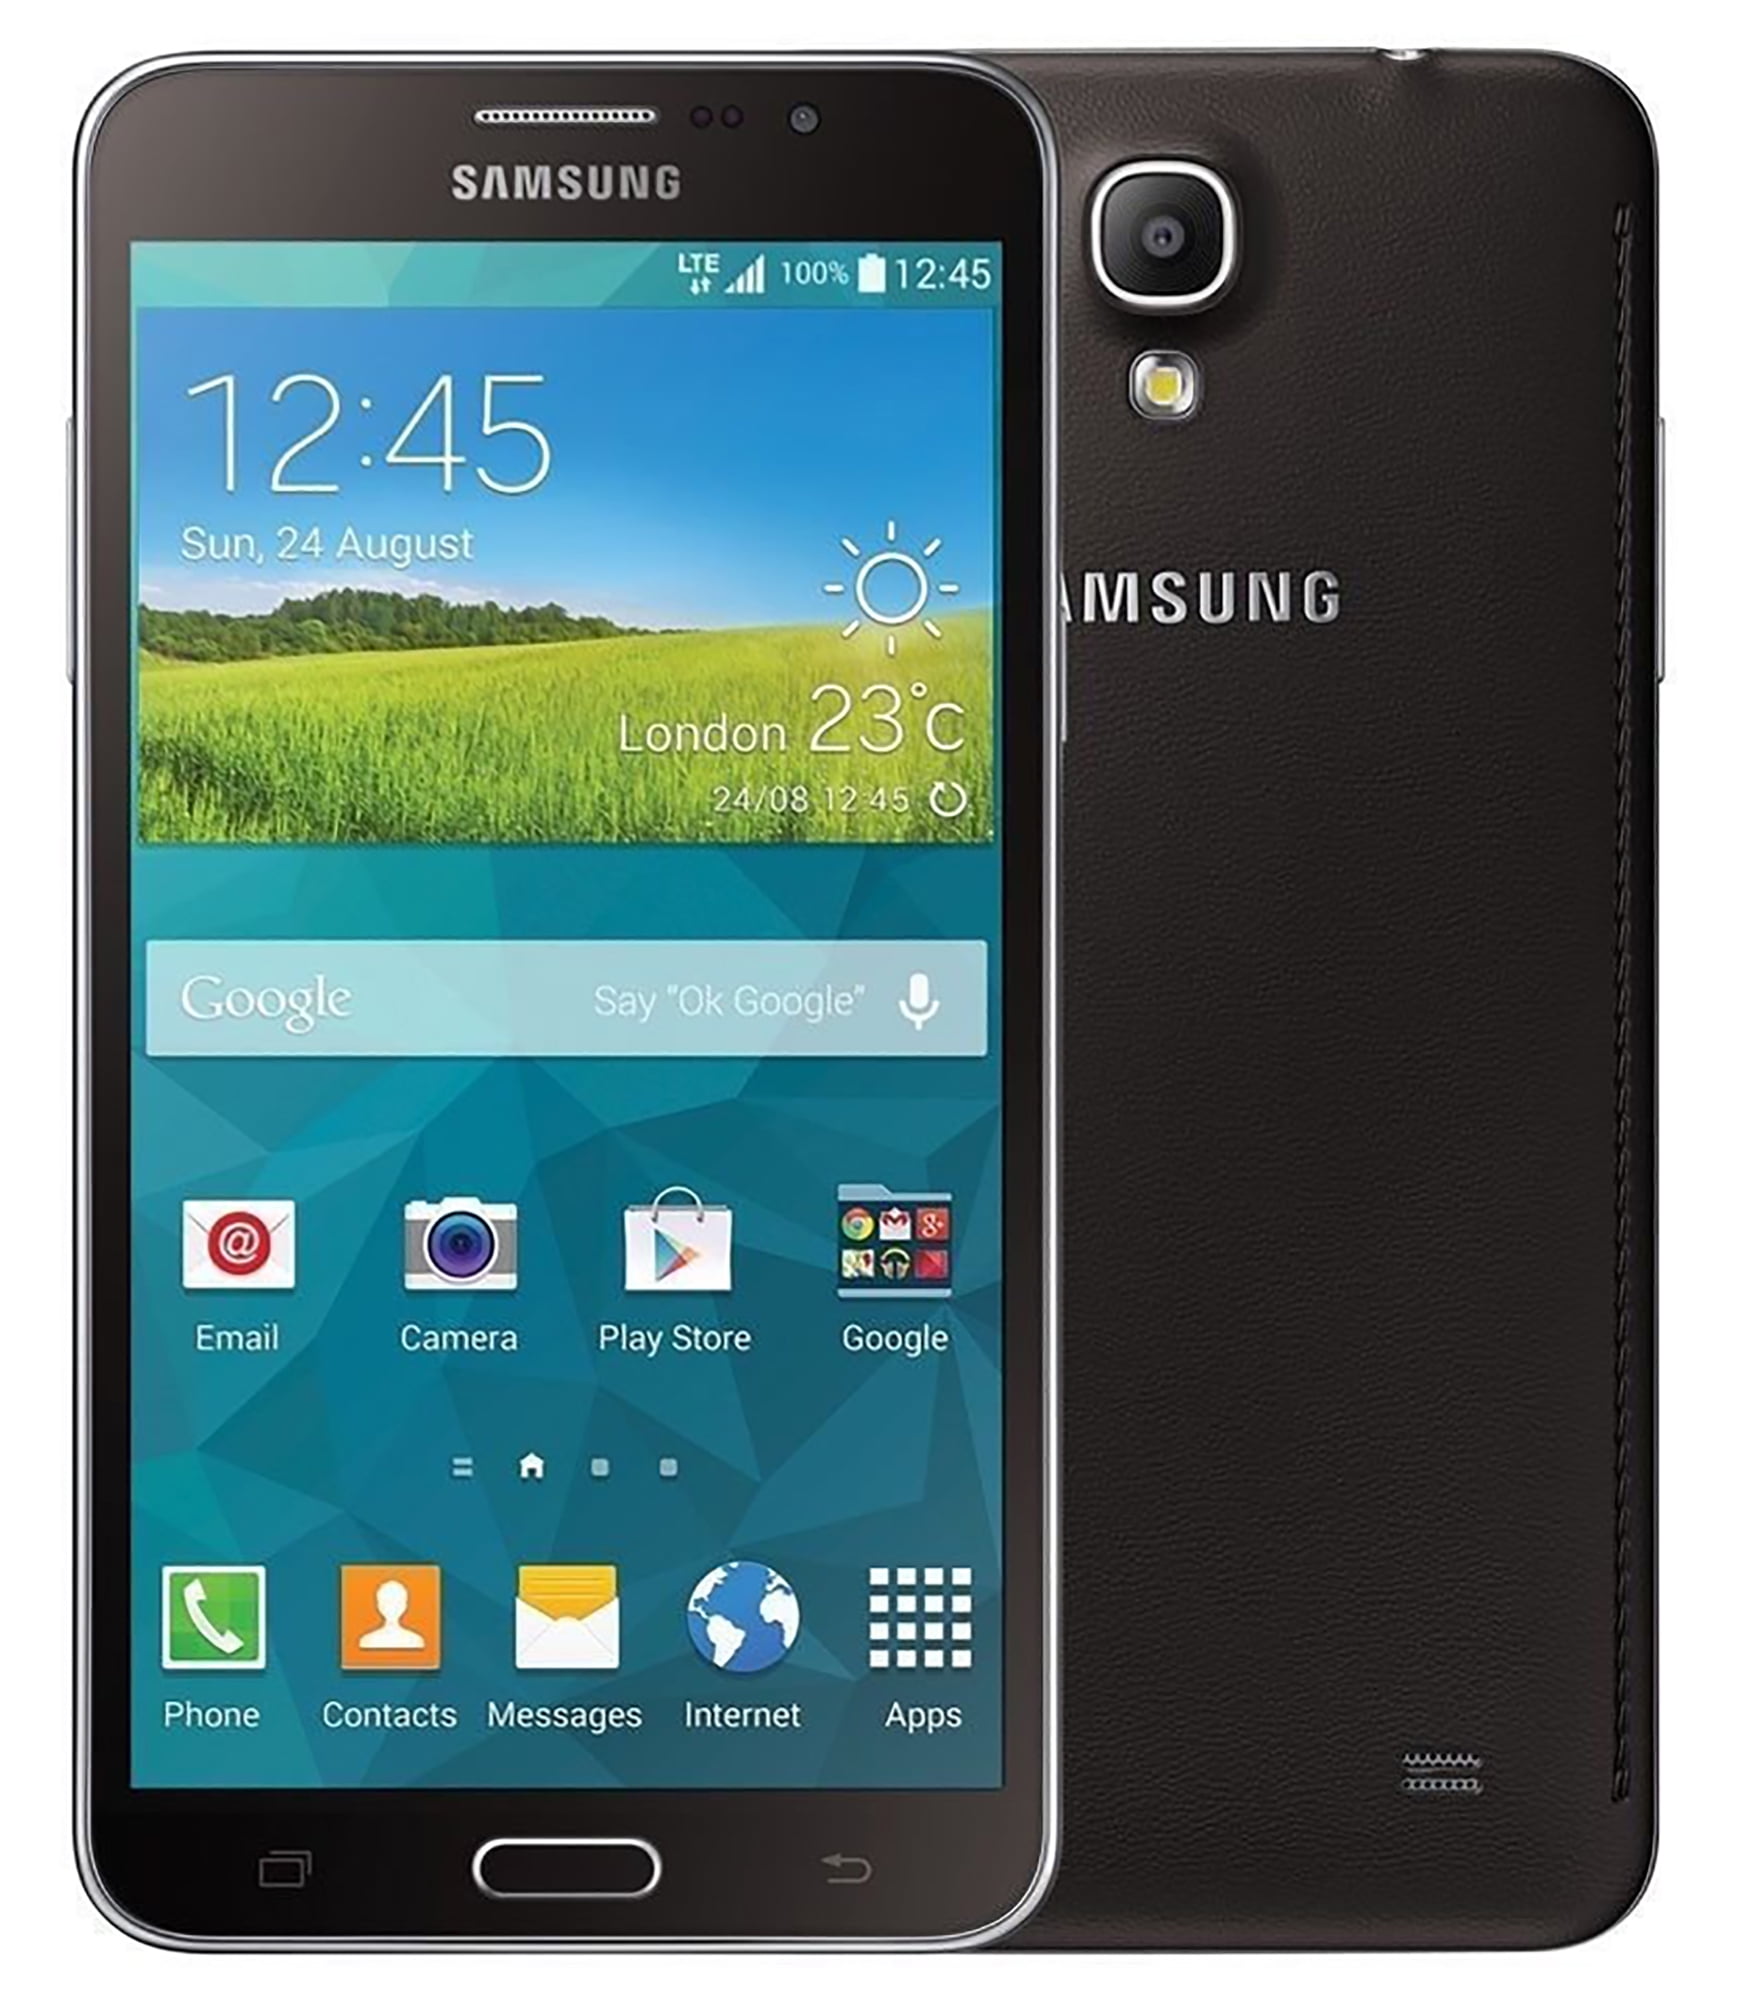 Samsung Galaxy Mega 2 LTE